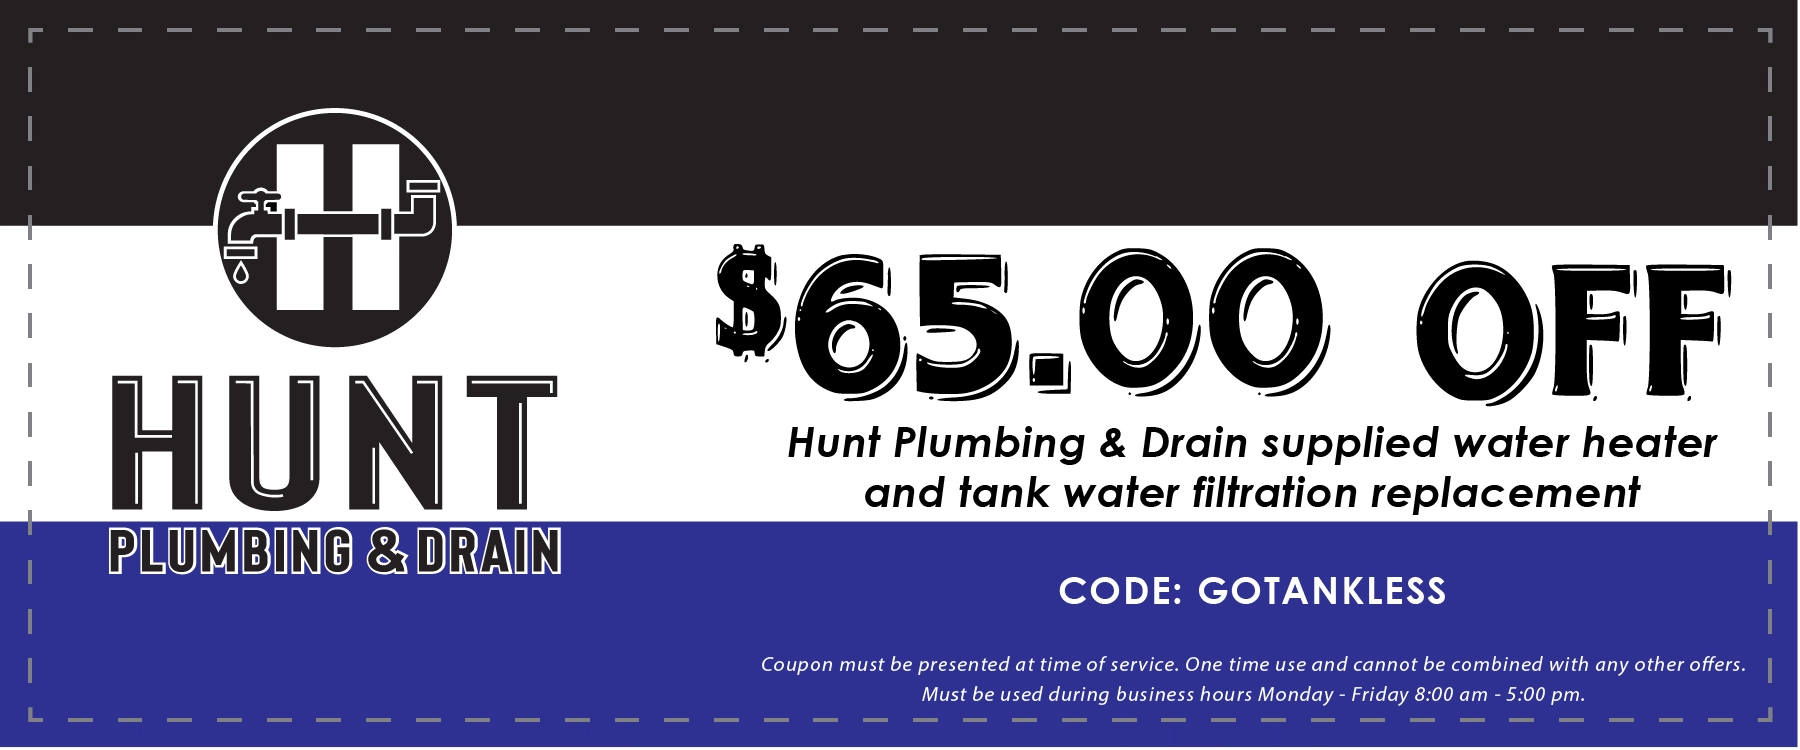 Hunt Plumbing & Drain Logo